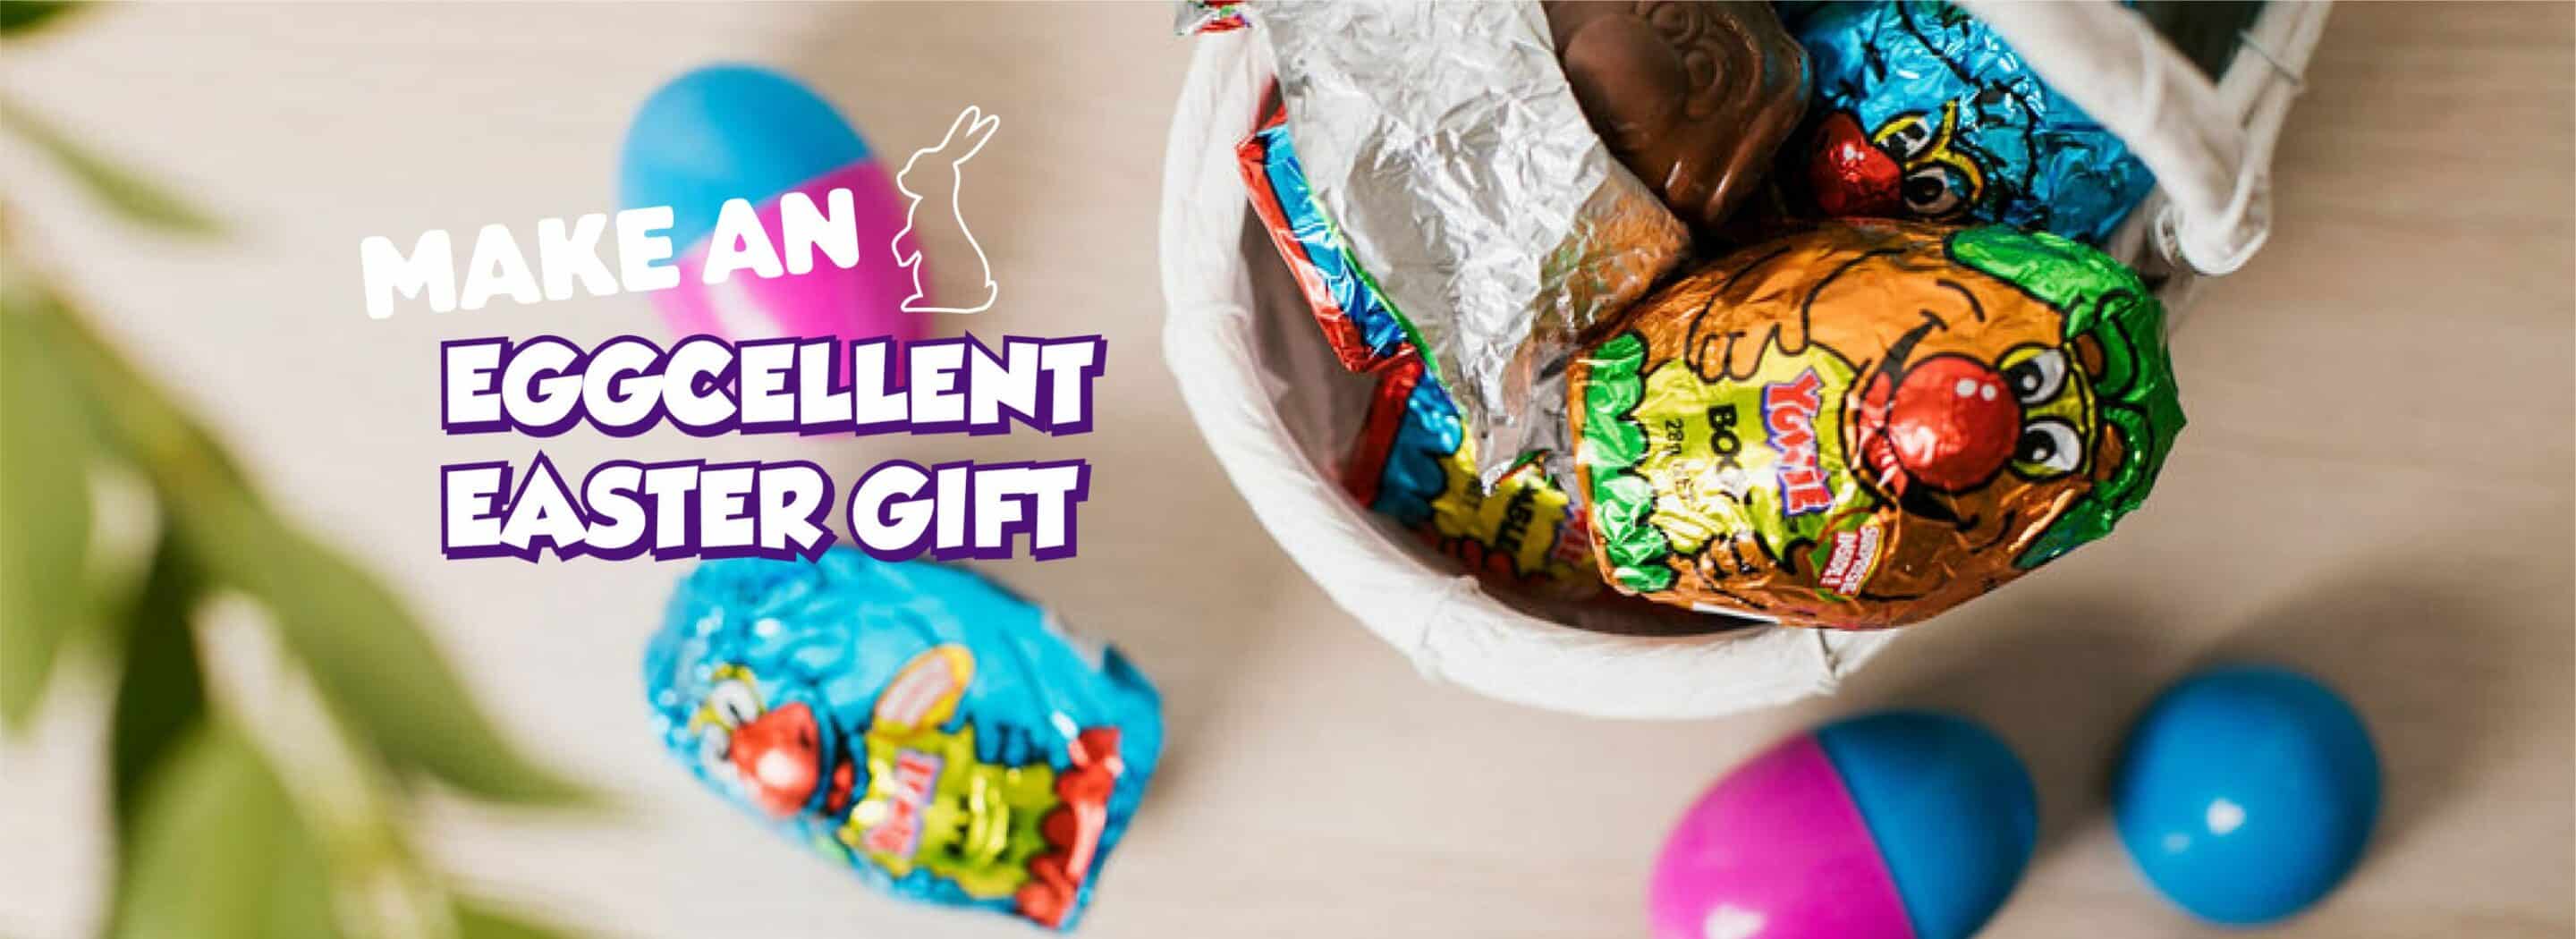 Crafts And Printables Make An Eggcellent Easter Gift Header